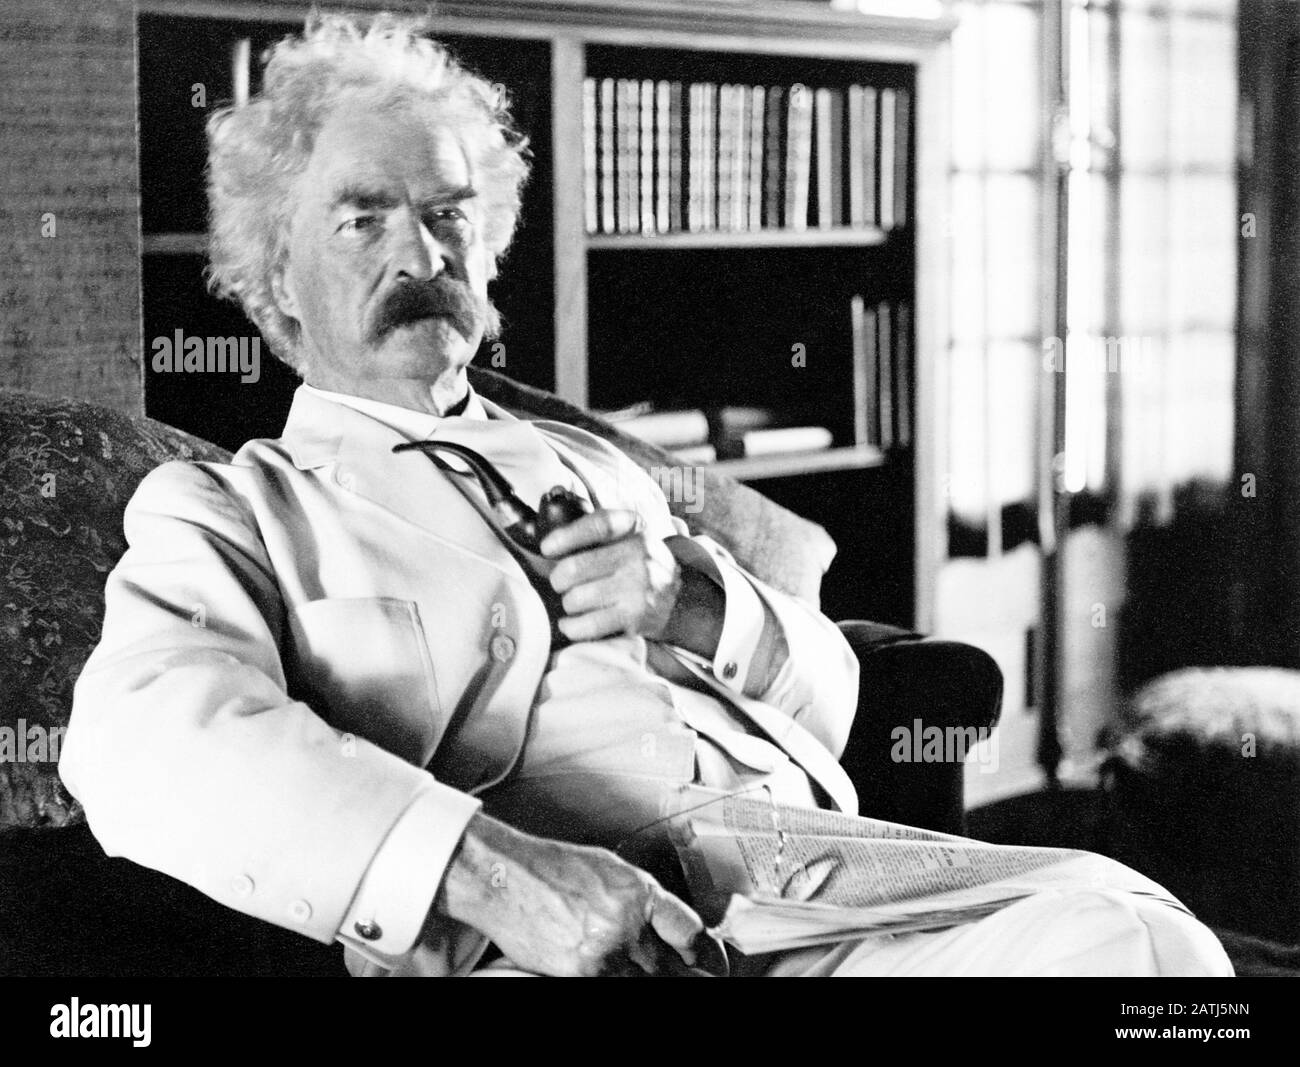 Vintage-Portrait-Foto des amerikanischen Schriftstellers und Humoristen Samuel Langhorne Klemens (zwischen 1835 und 1910), besser bekannt unter seinem Federnamen Mark Twain. Foto ca. 1905. Stockfoto